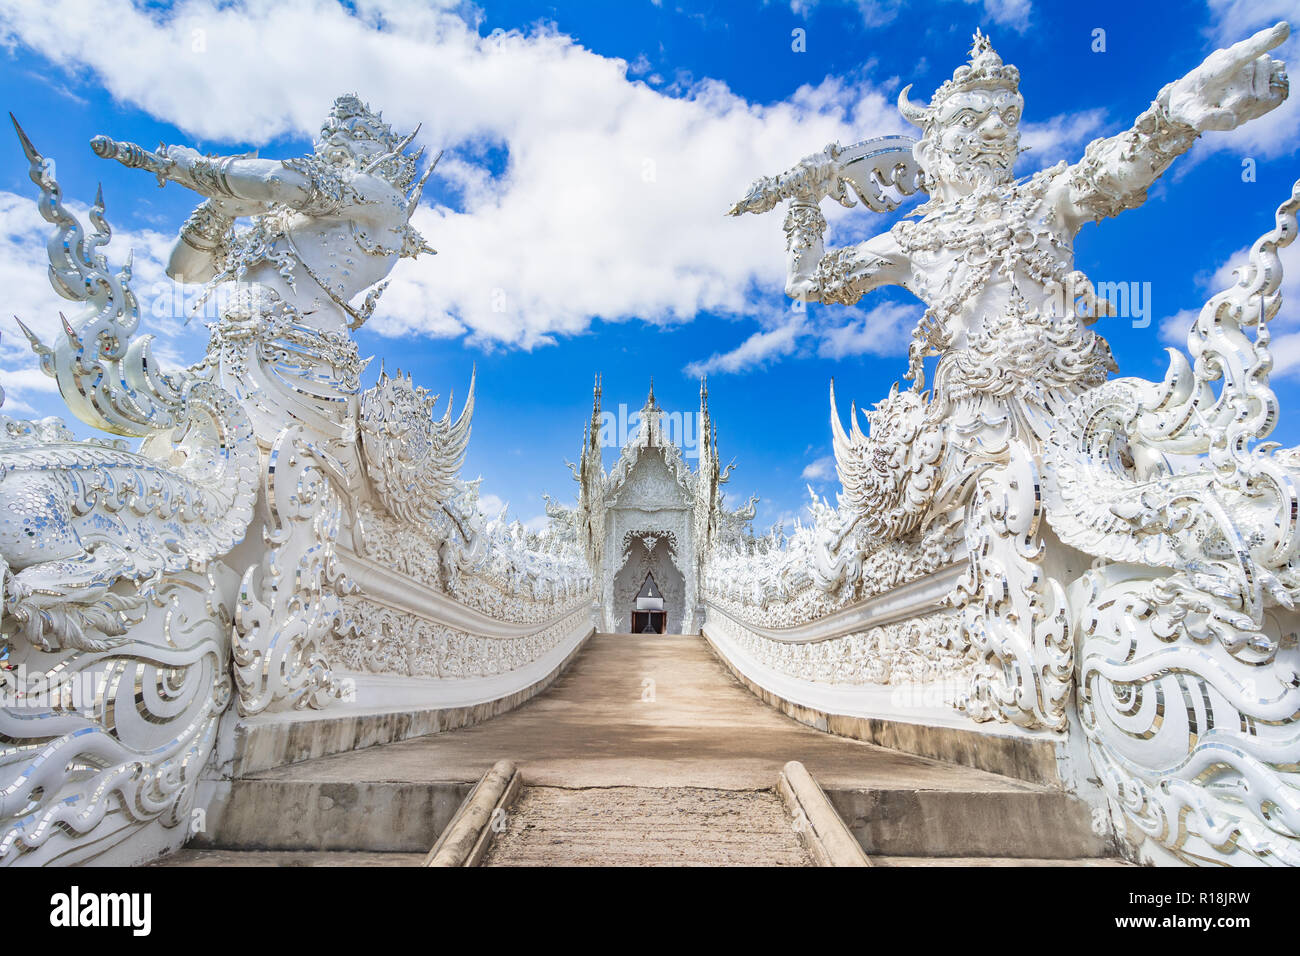 Chiang Rai, Thailand, Asien: schönen verzierten weißen Tempel in Chiang Rai im Norden von Thailand, eine moderne, unkonventionelle buddhistischen Tempel entfernt. Stockfoto